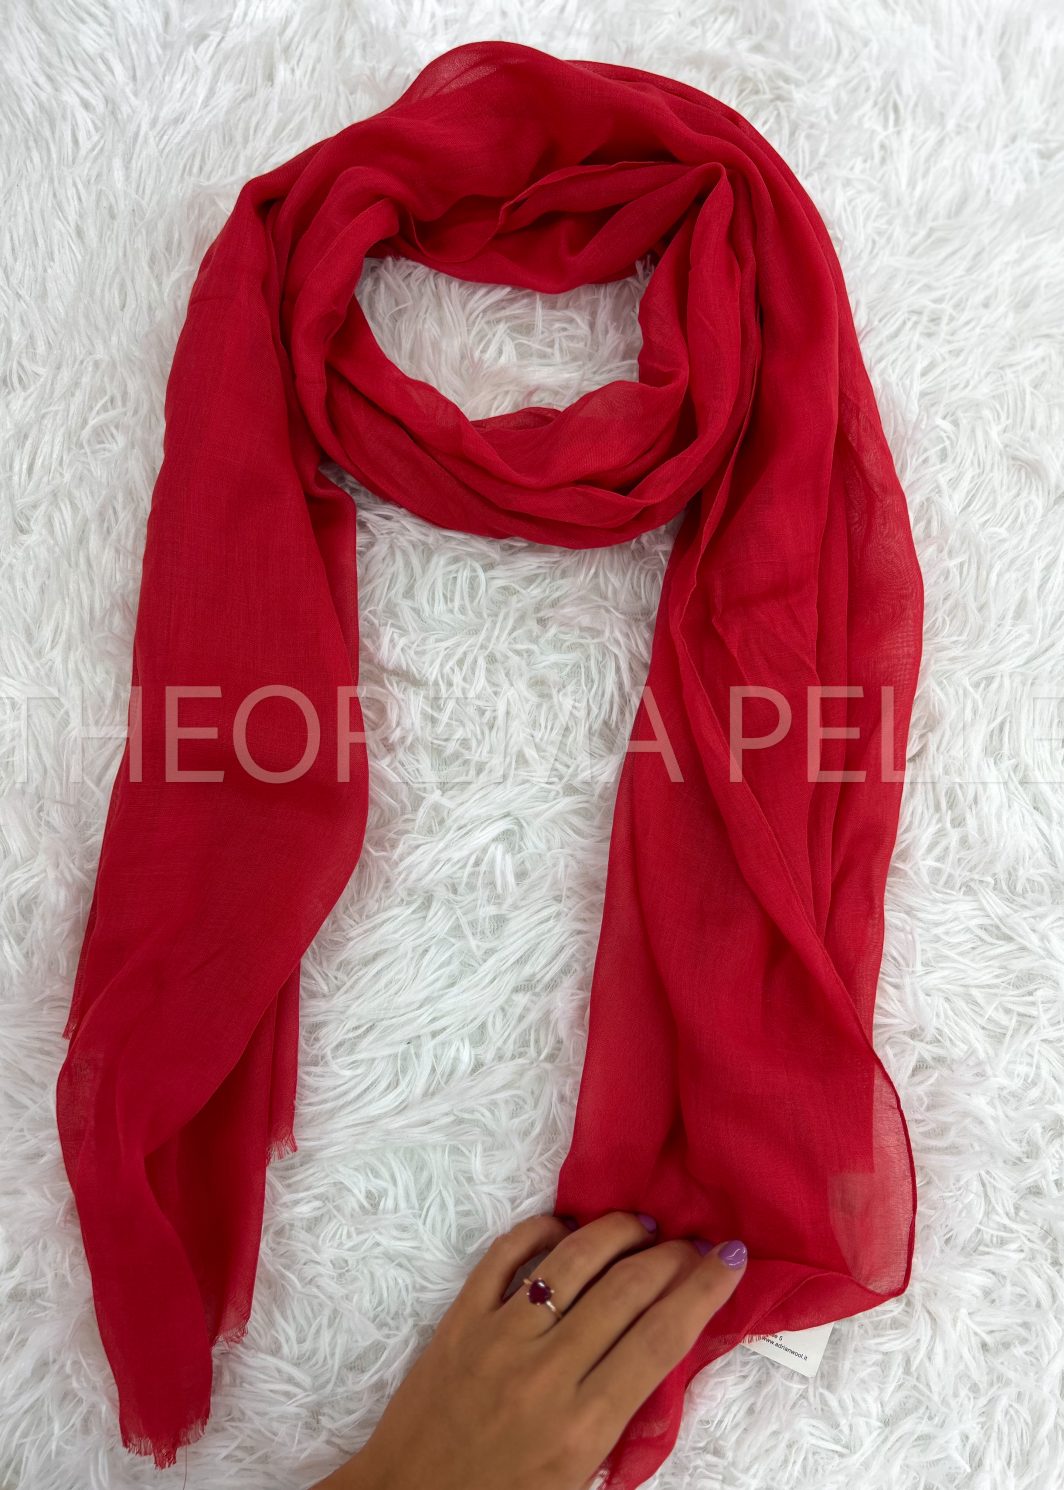 ENNEGI AB08 -guanti donna rossi in vera pelle semplici-